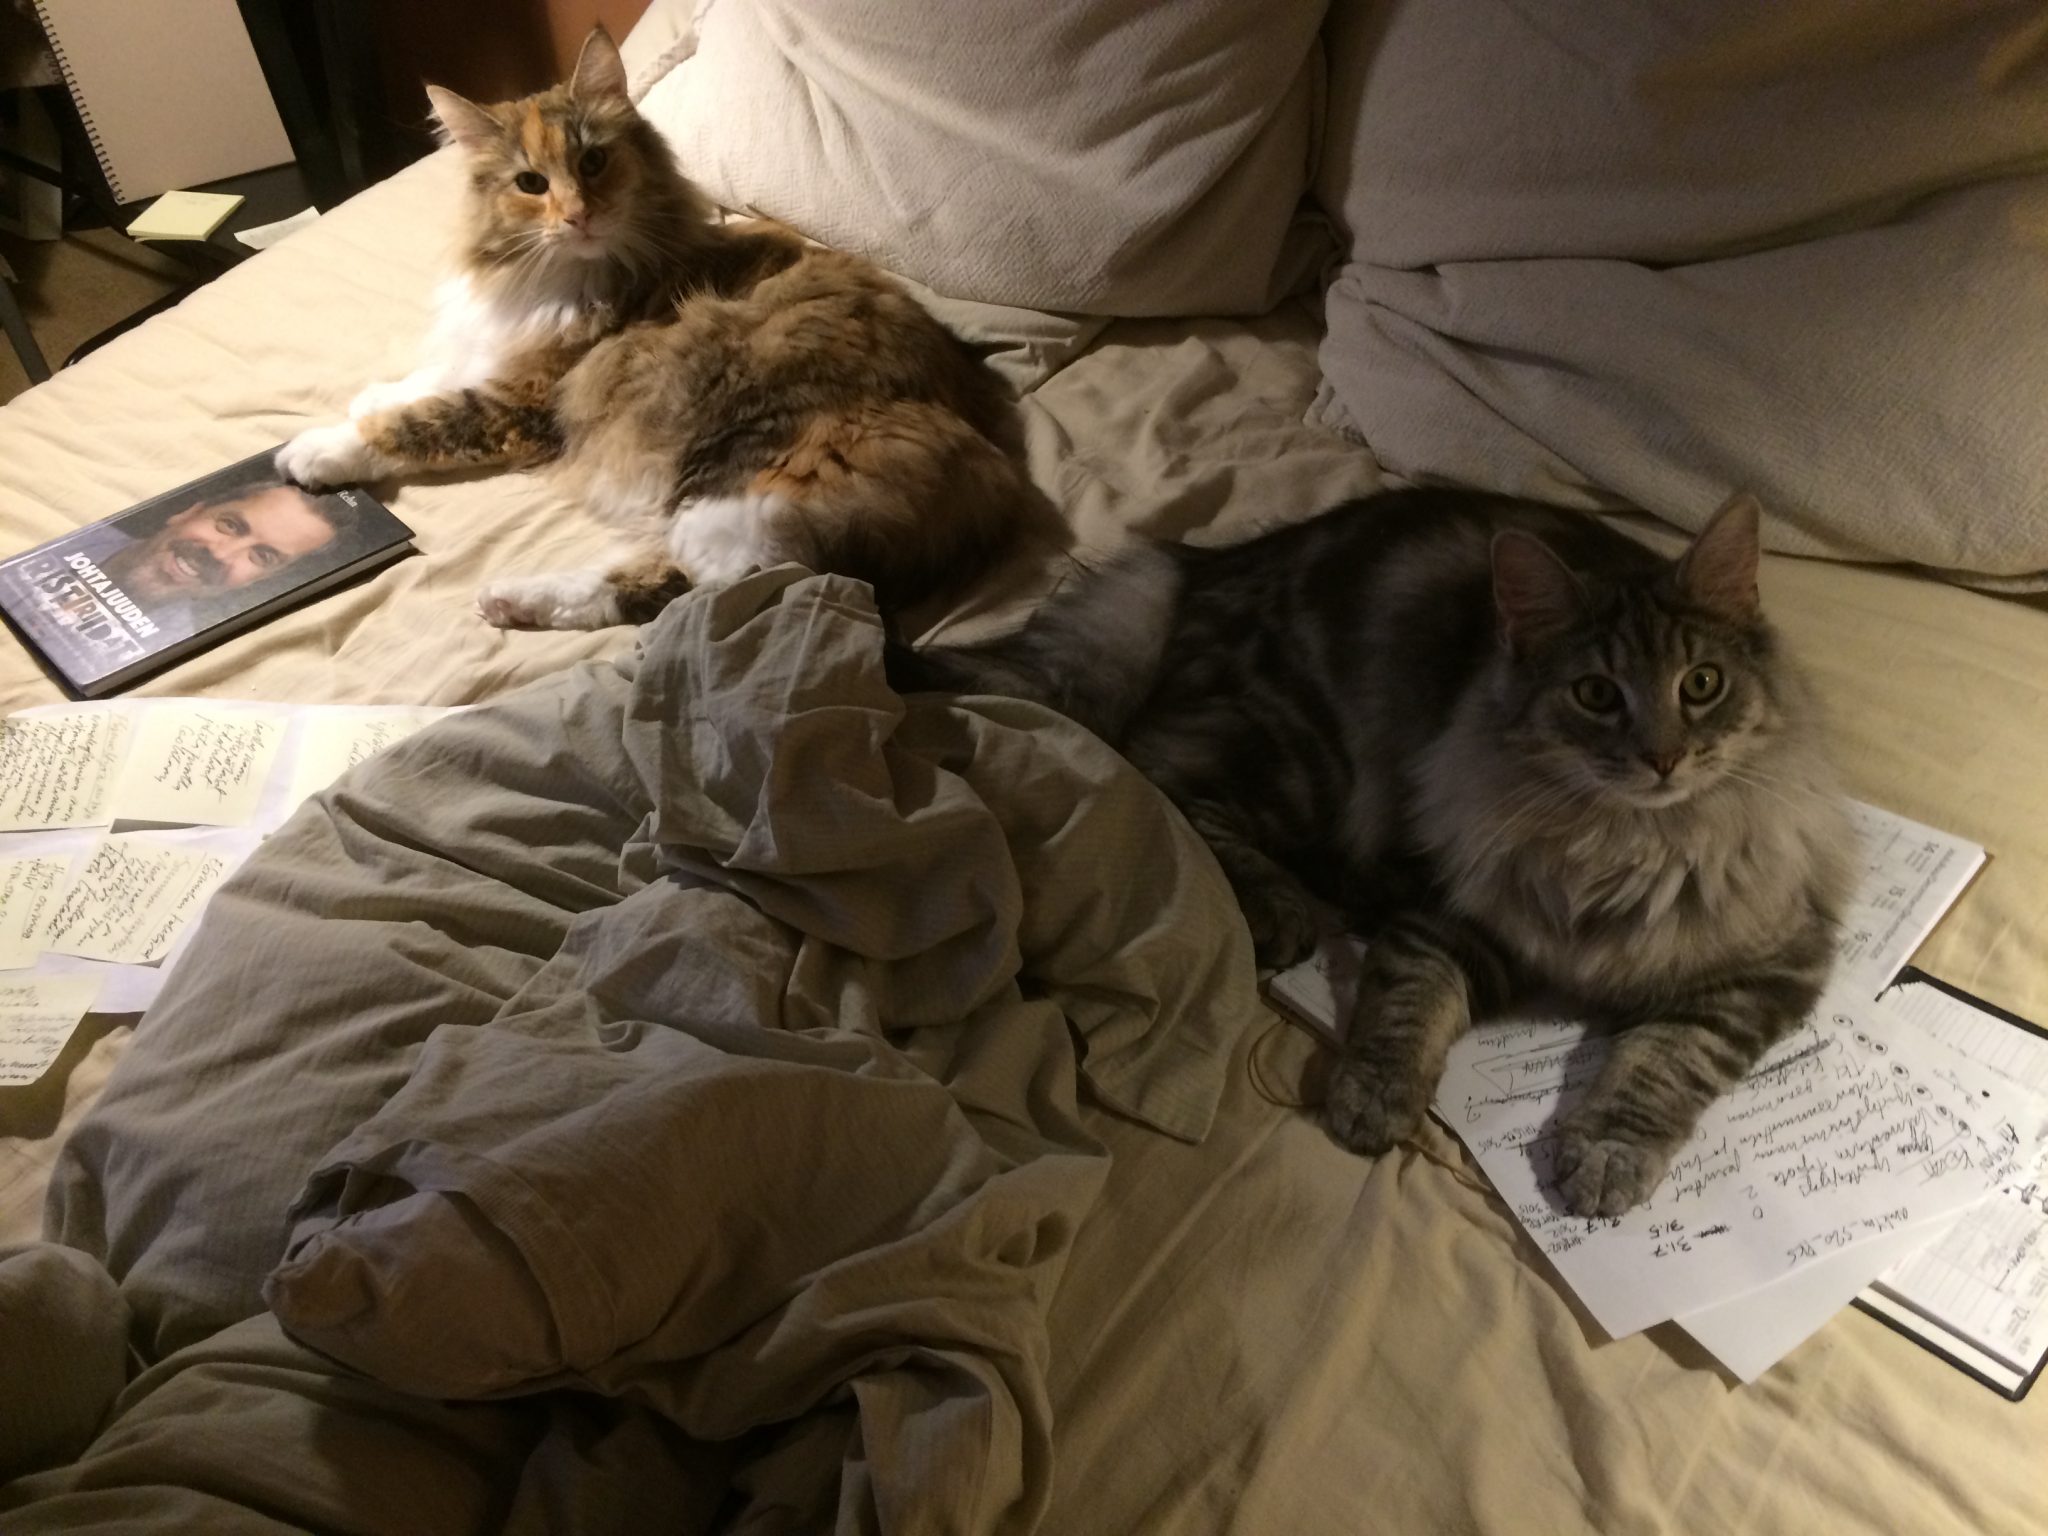 Kaksi pikäkarvaista kissaa lepää petaamattomalla sängyllä ja katsovat kuvaajaa, kissojen vieressä ja alla on muistiinpanoja ja kirja..